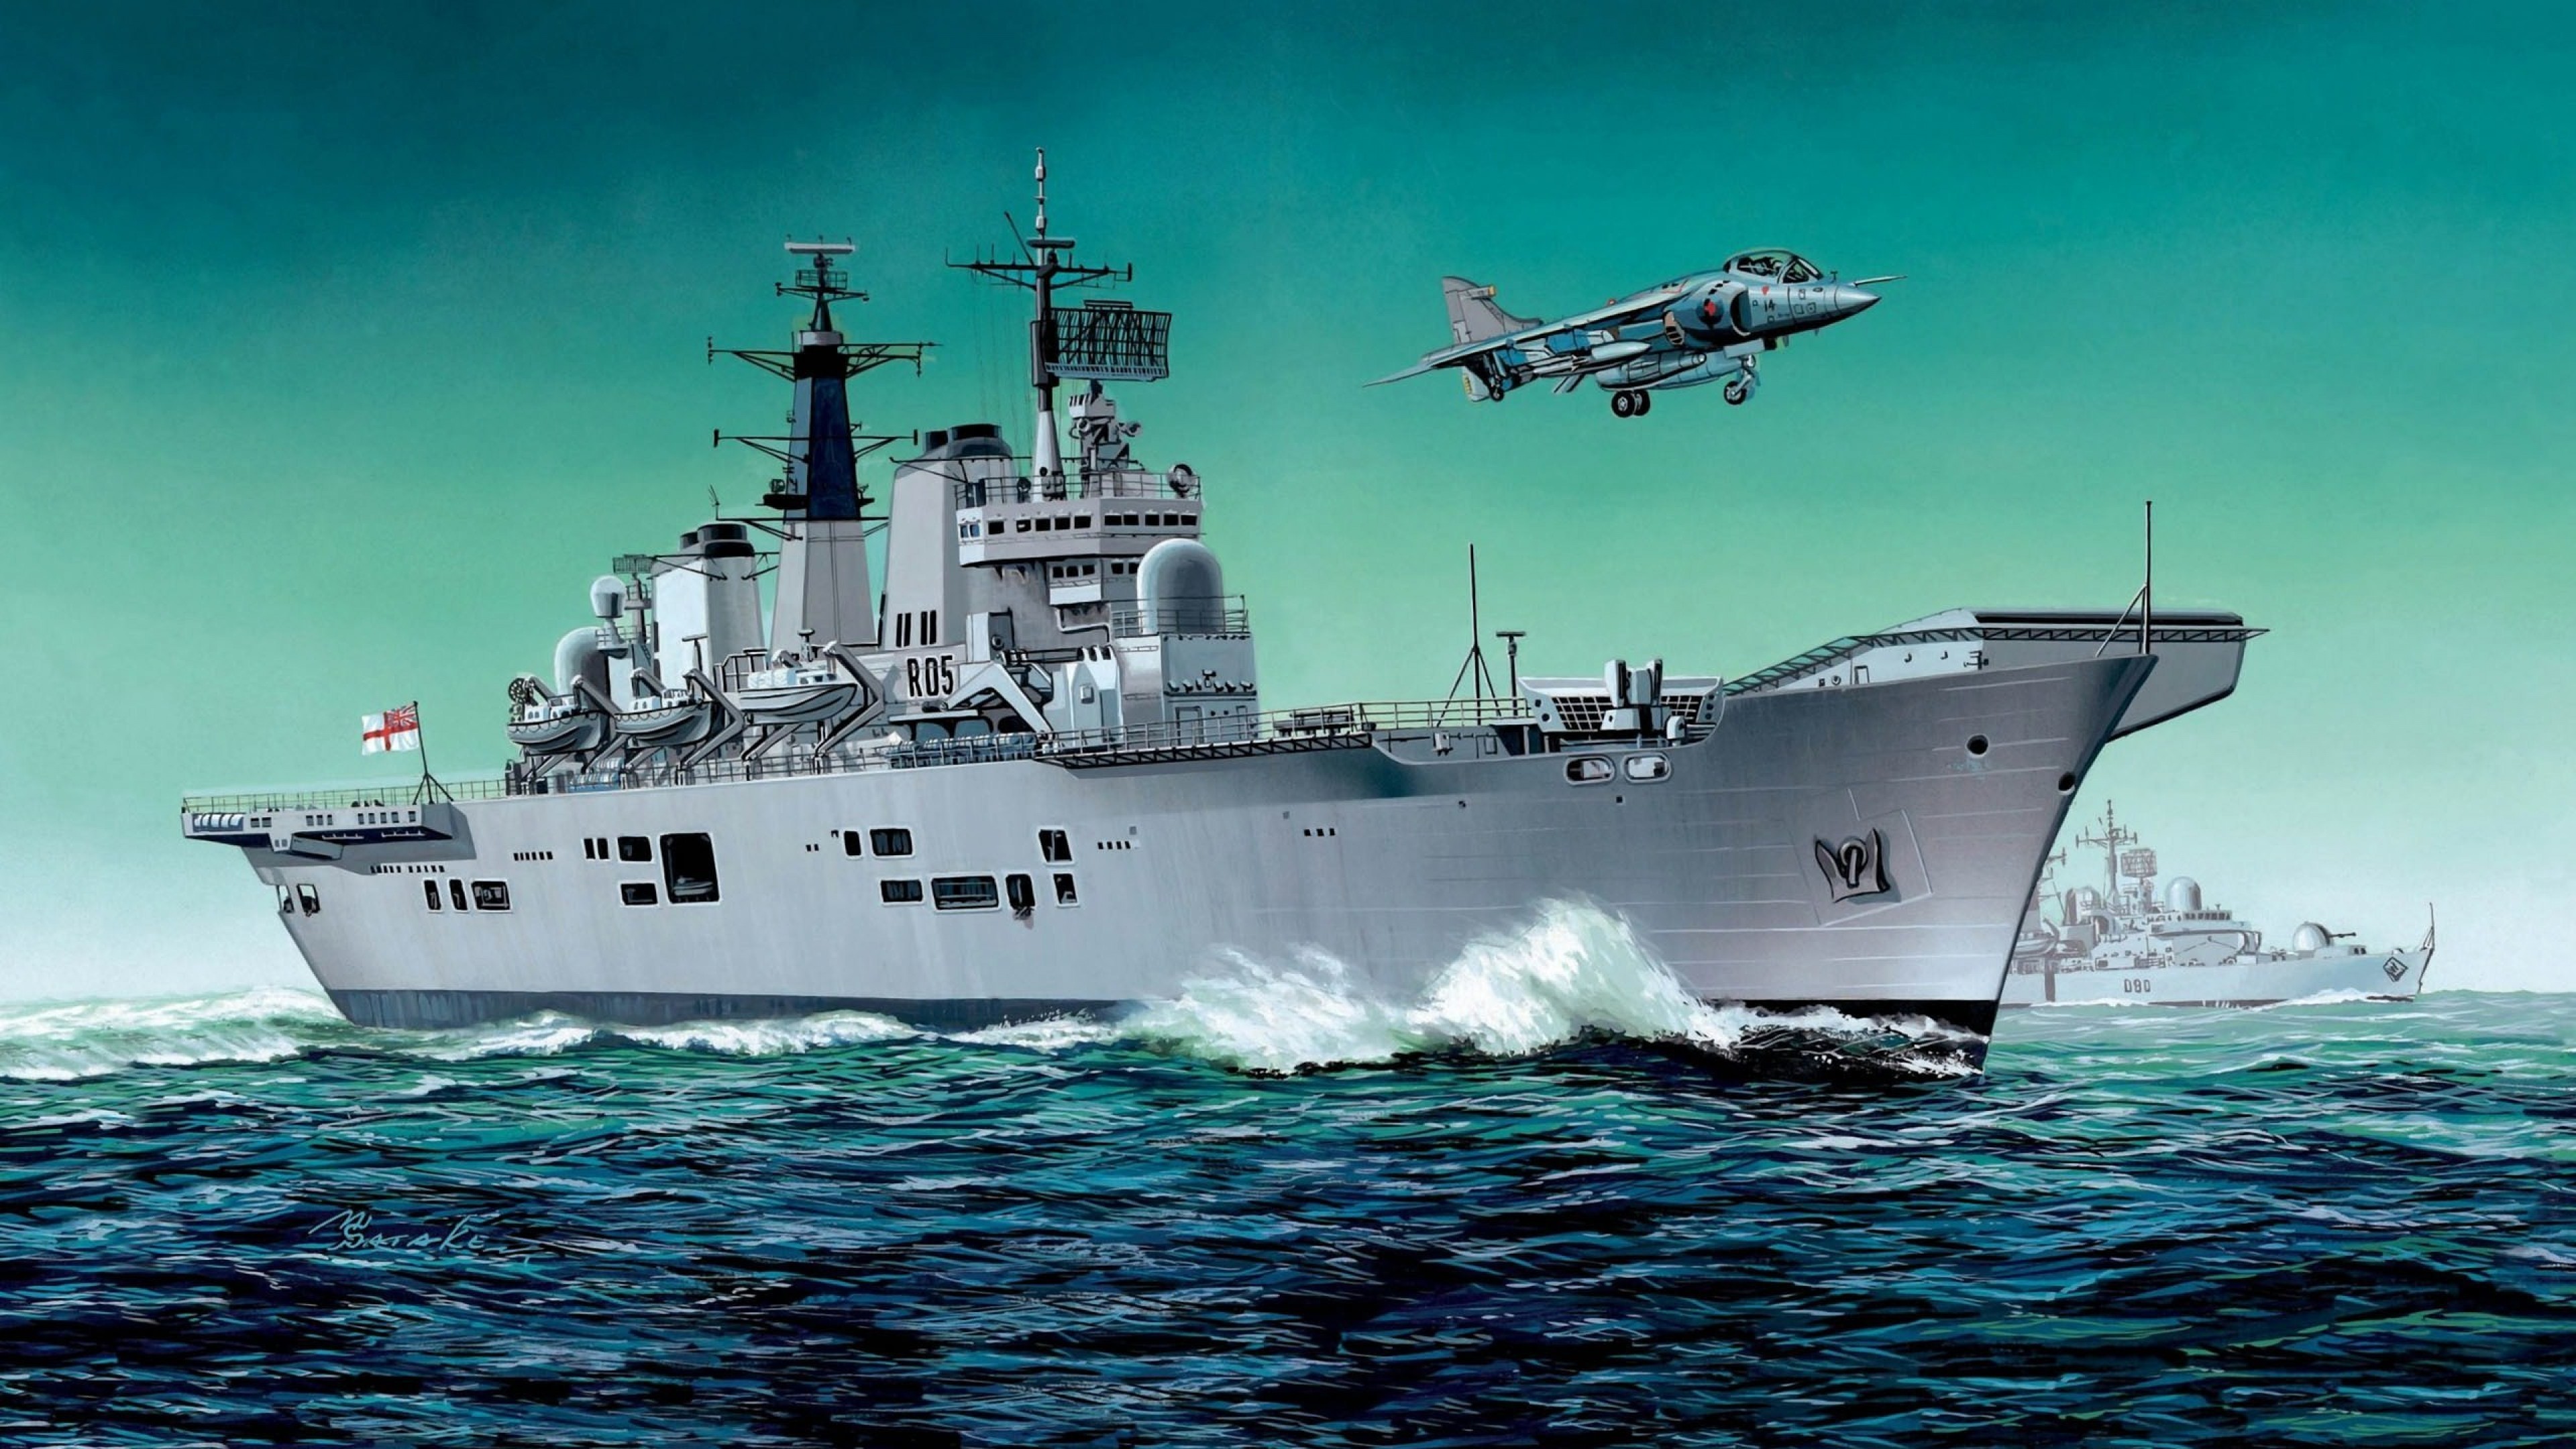 航空母舰 军舰 海军 沉重的巡洋舰 船只高清壁纸 武器图片 桌面背景和图片